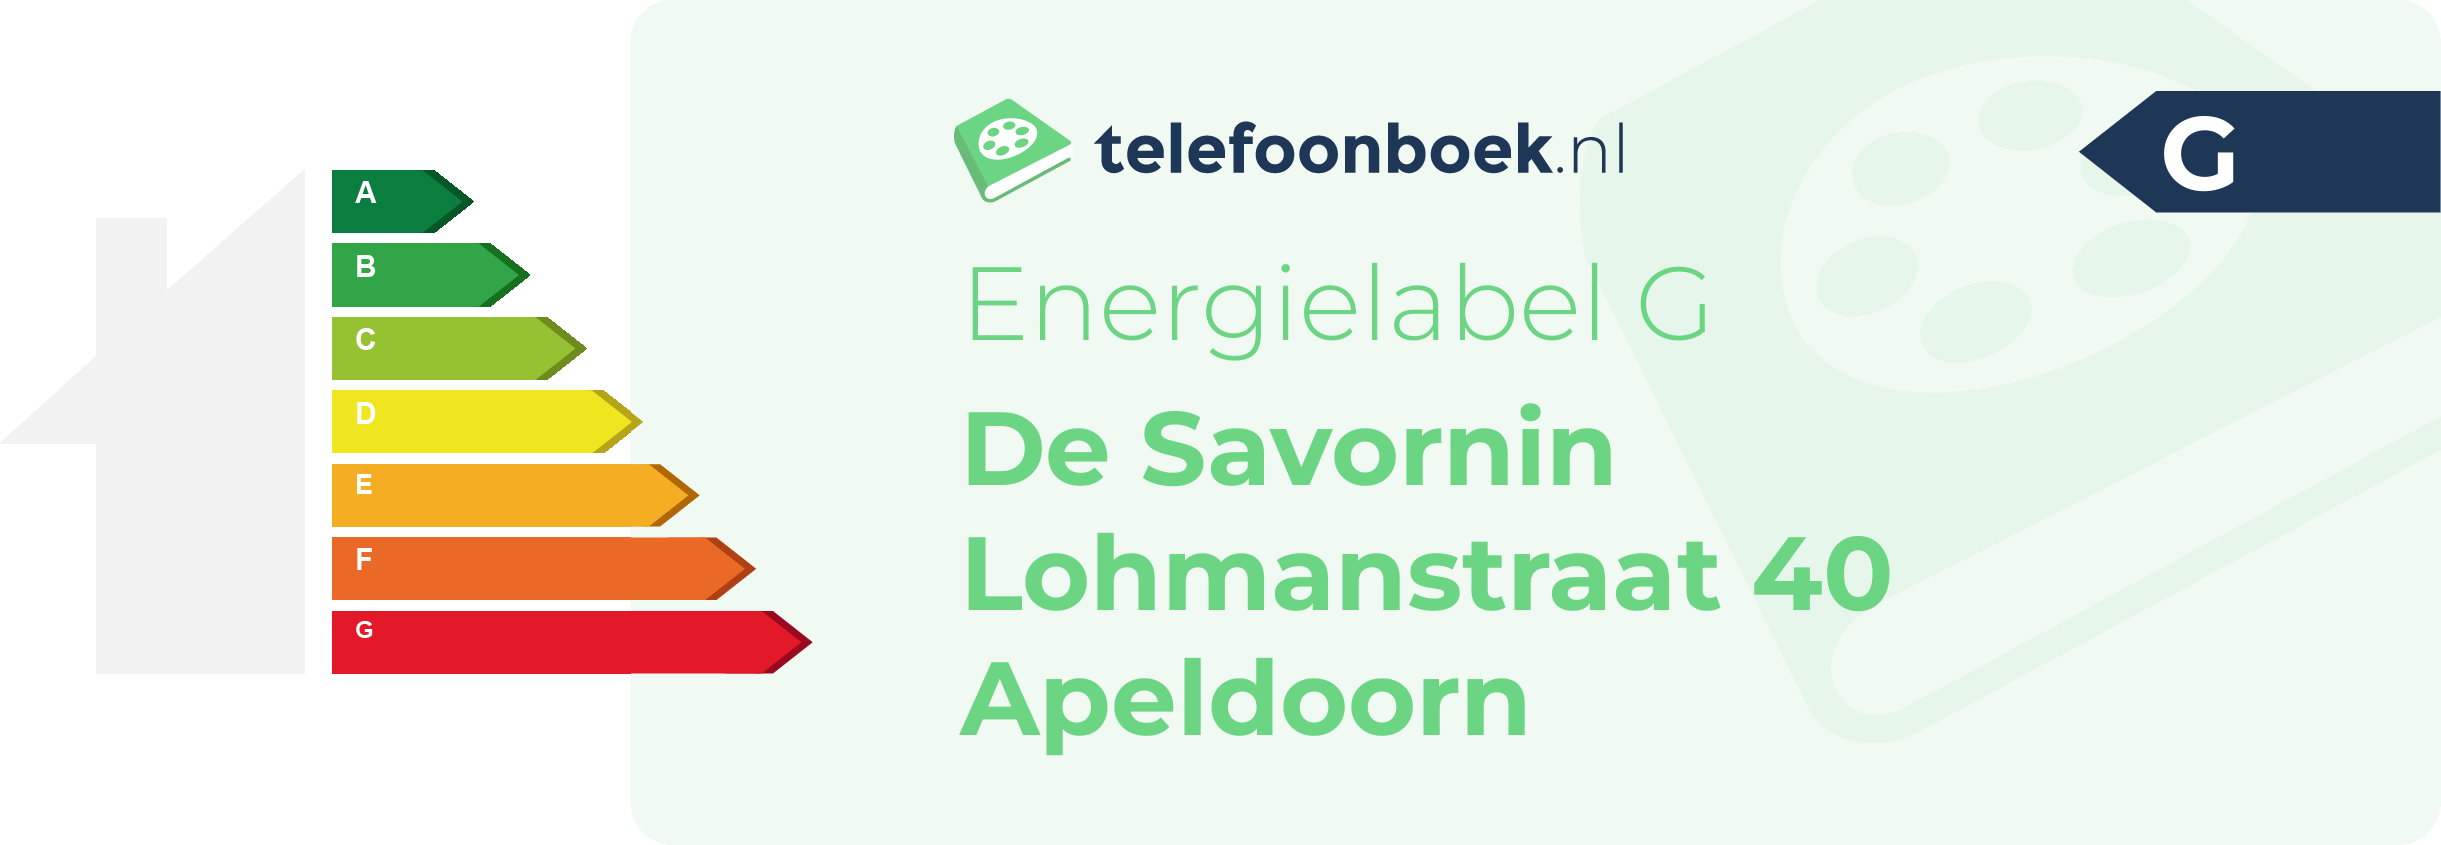 Energielabel De Savornin Lohmanstraat 40 Apeldoorn